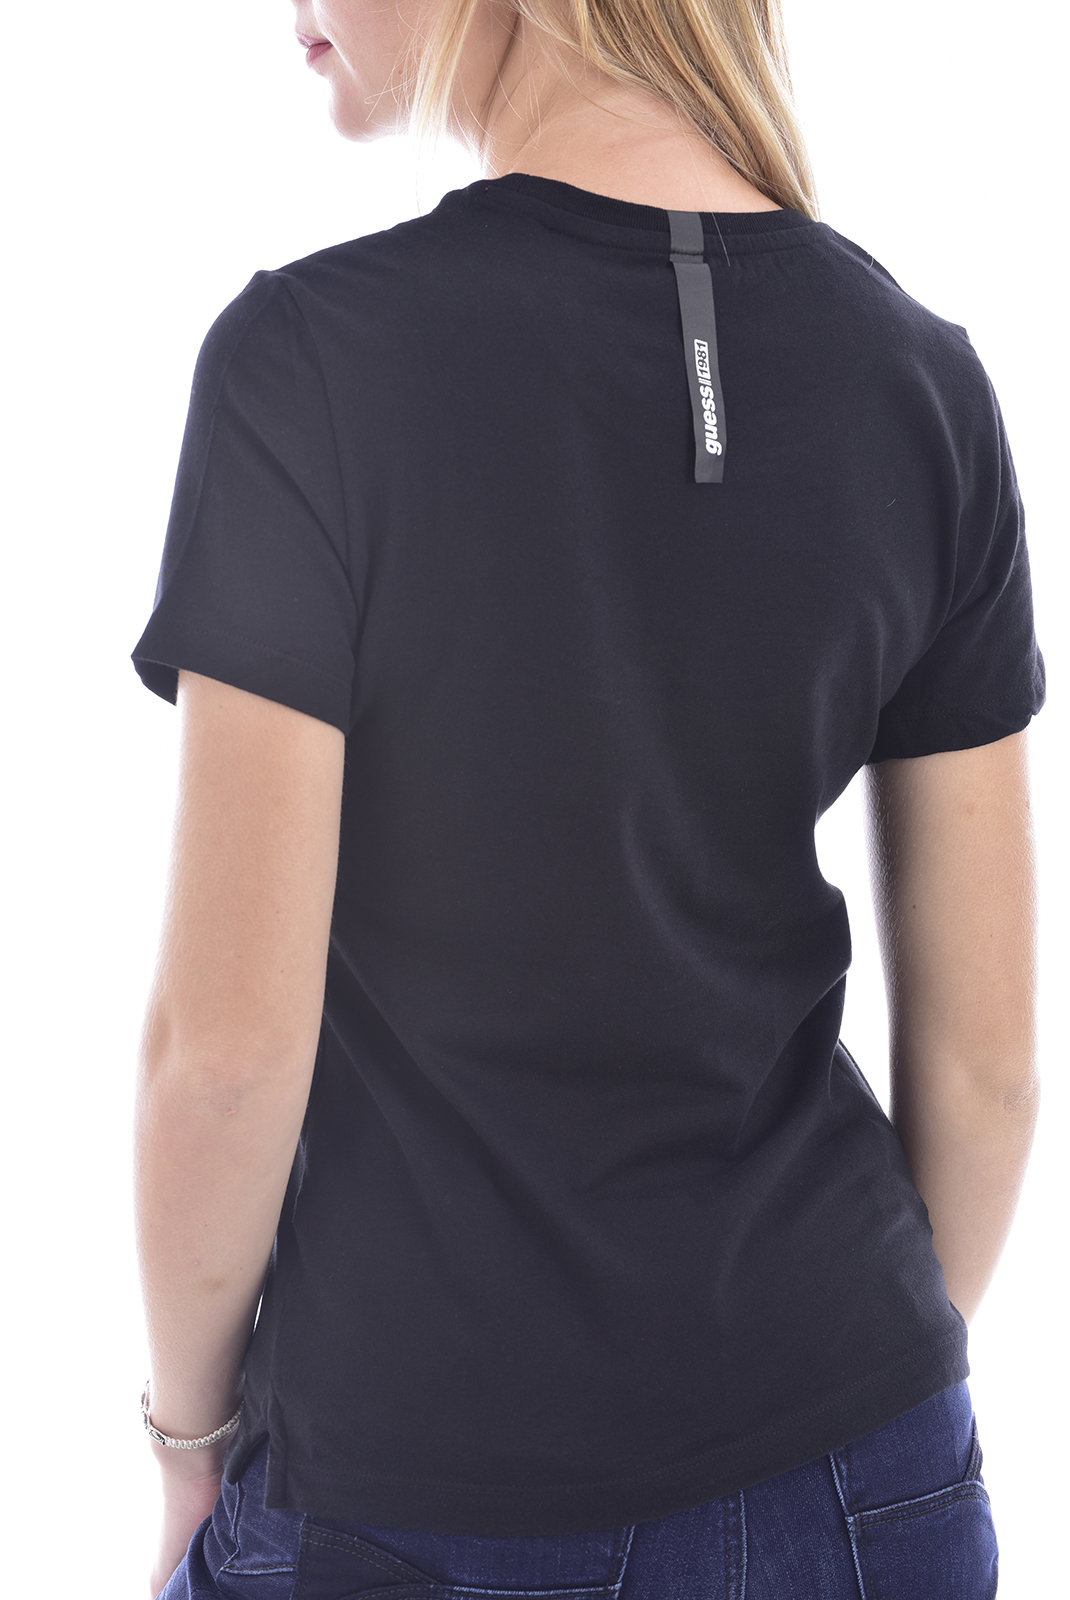 Tee-shirt noir pour femme Guess - W0bi14 